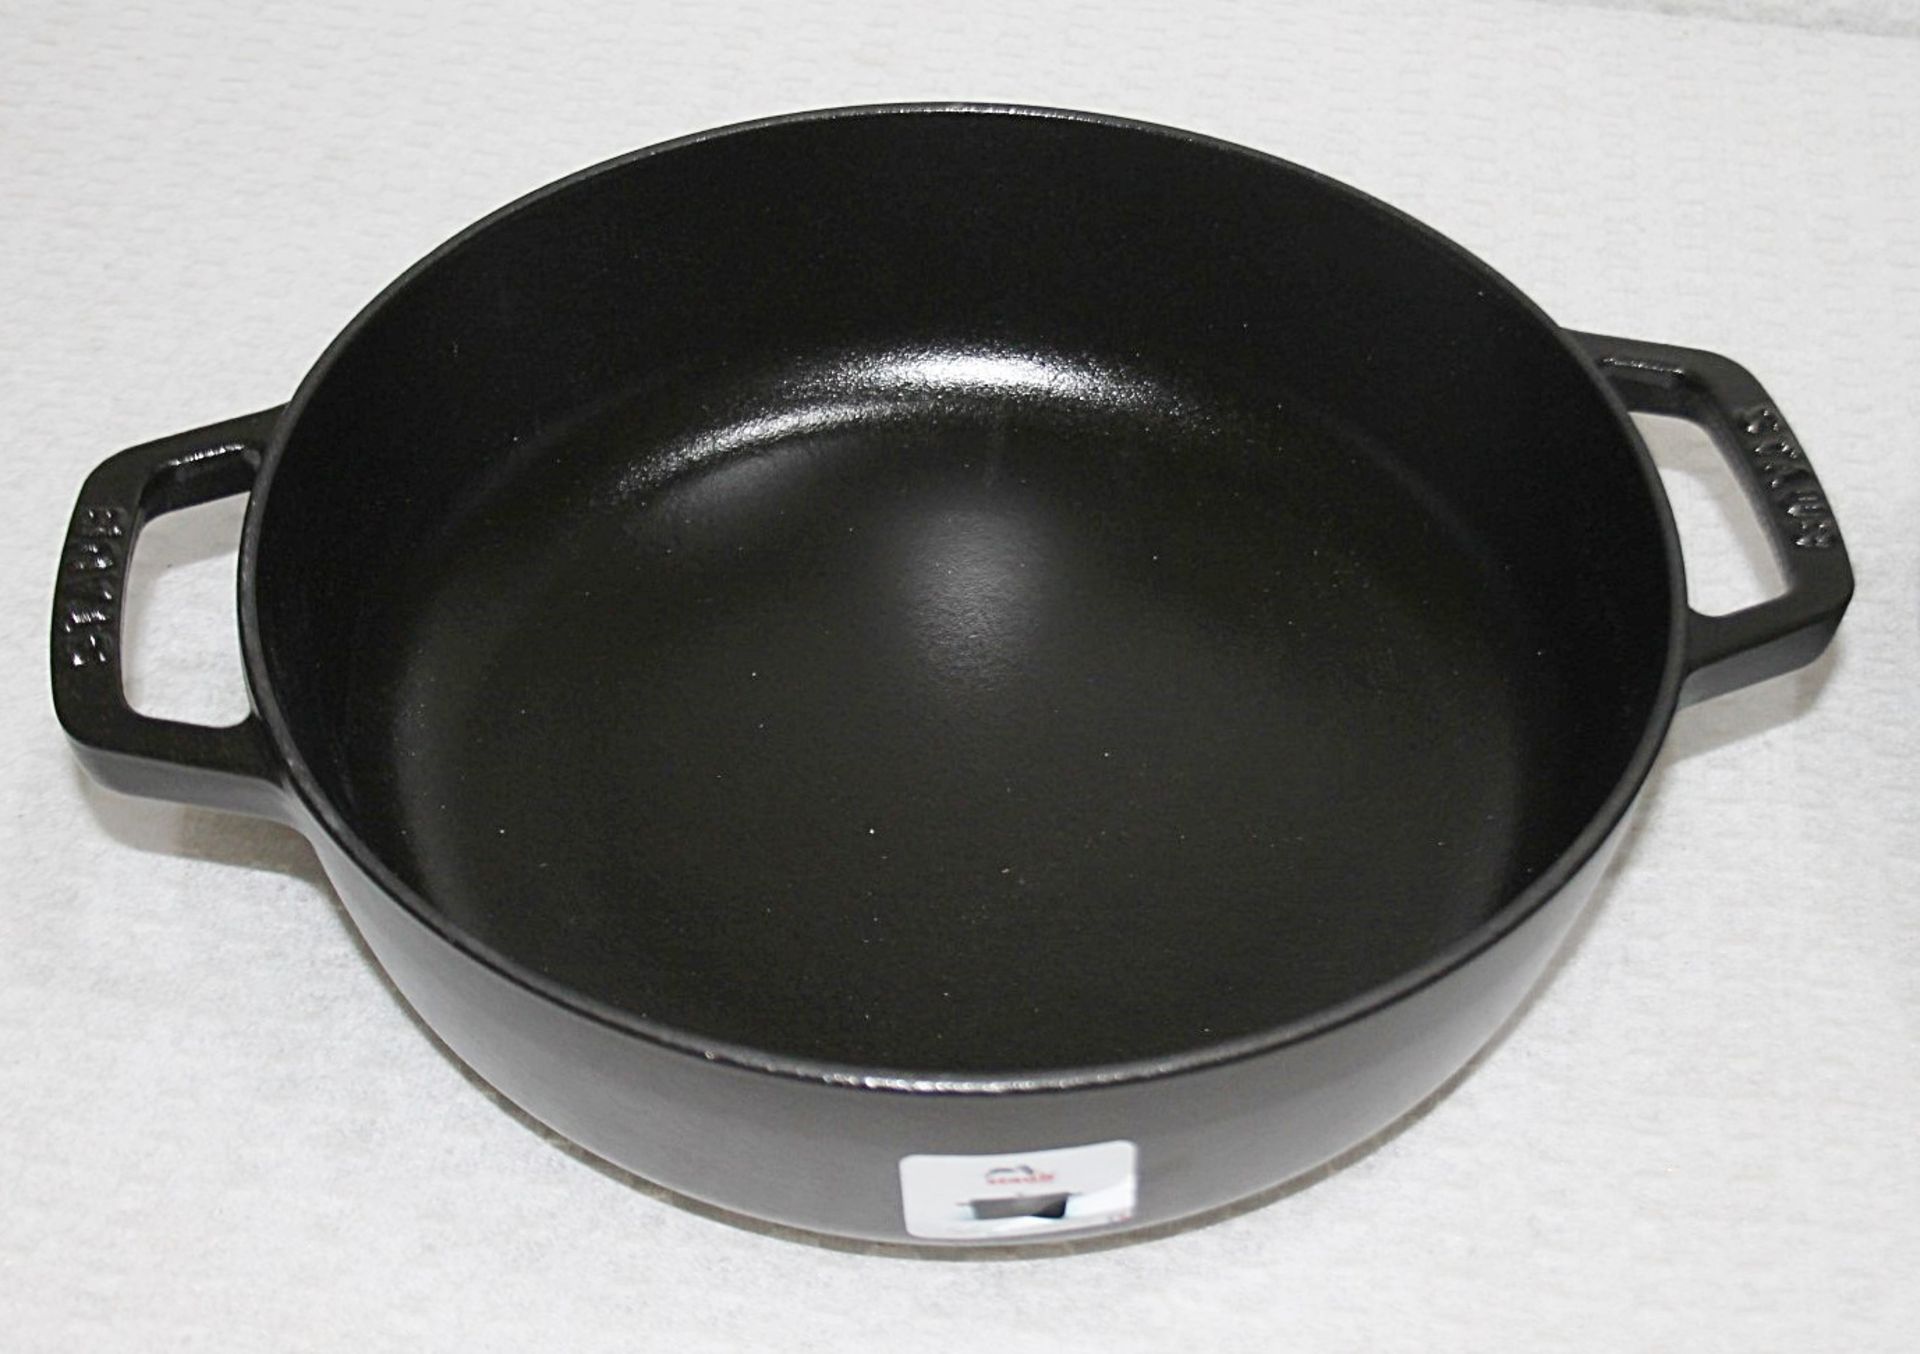 1 x STAUB Black Round Chistera Braiser Sauté Pan (24cm) - Original Price £199.00 - Unused Boxed - Image 3 of 9